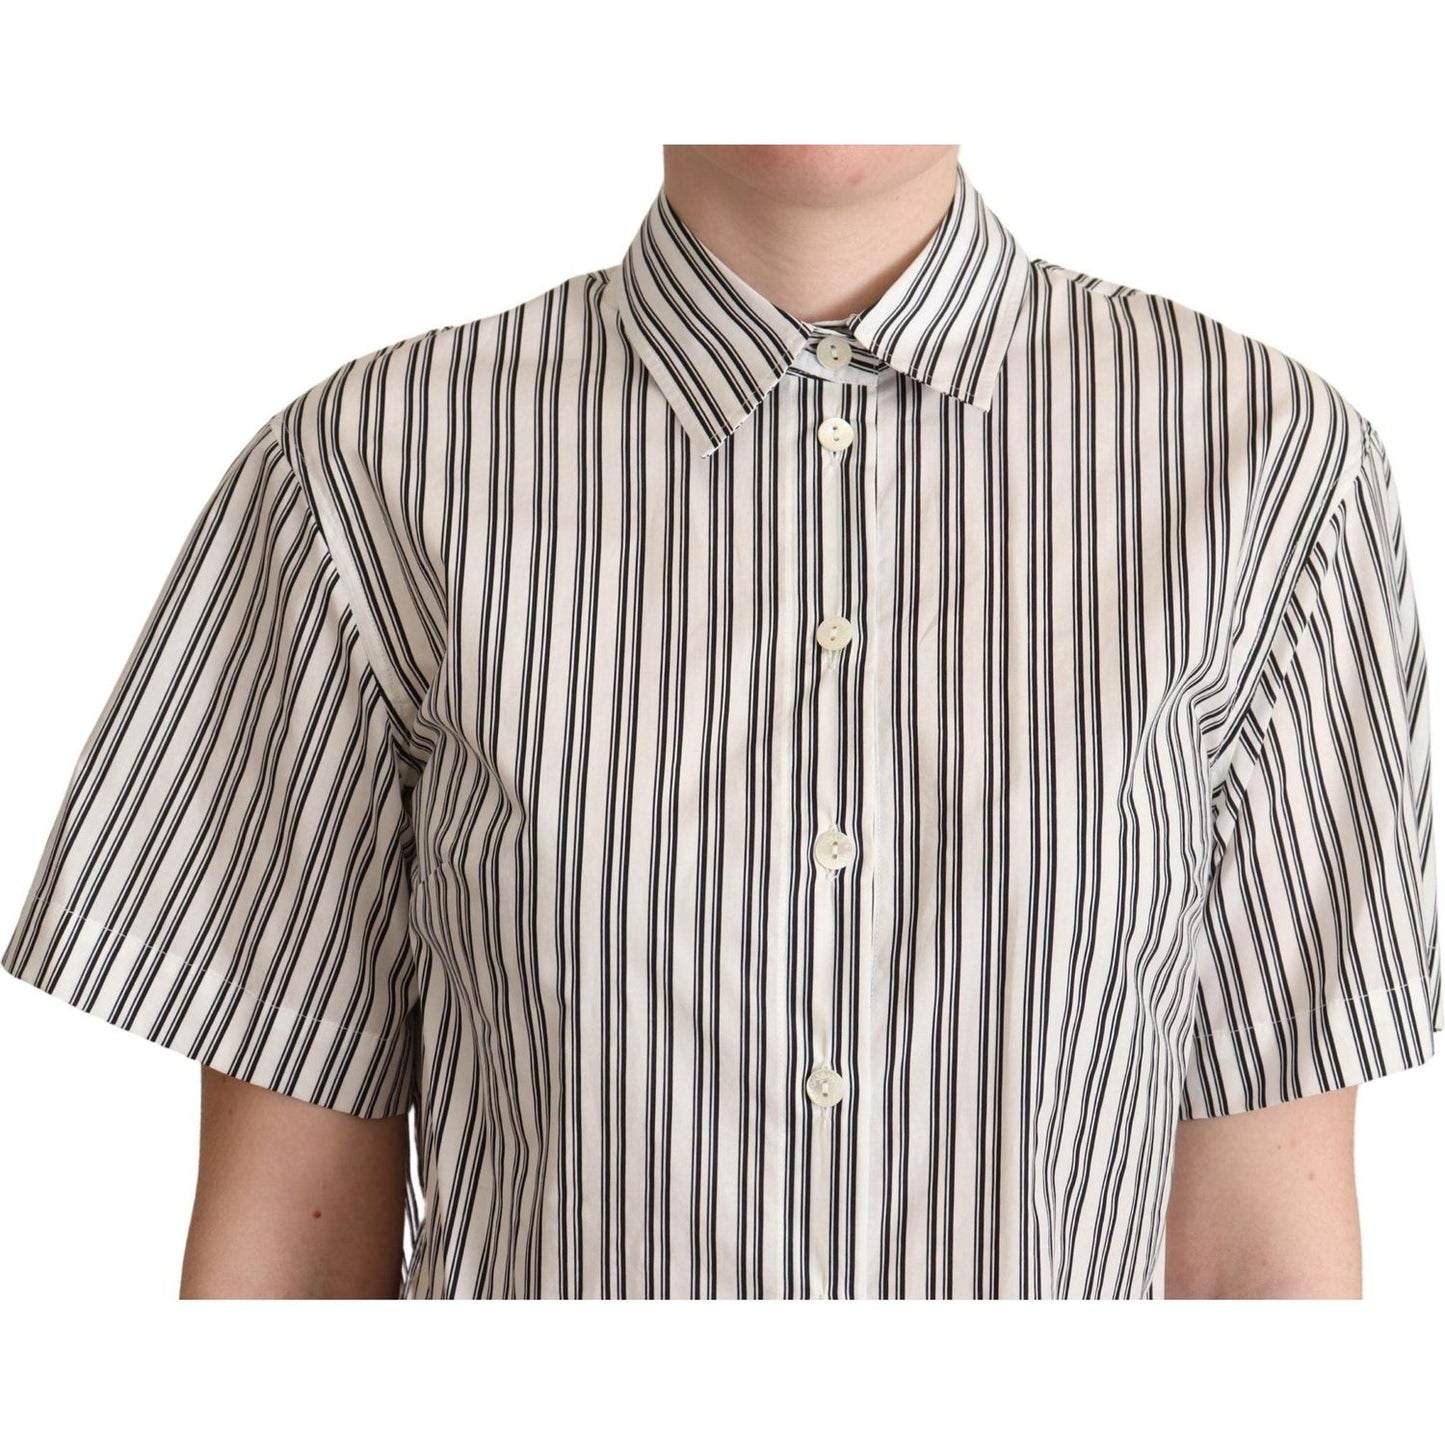 Dolce & Gabbana Elegant Striped Cotton Polo Top Blouse Top white-black-striped-shirt-blouse-top